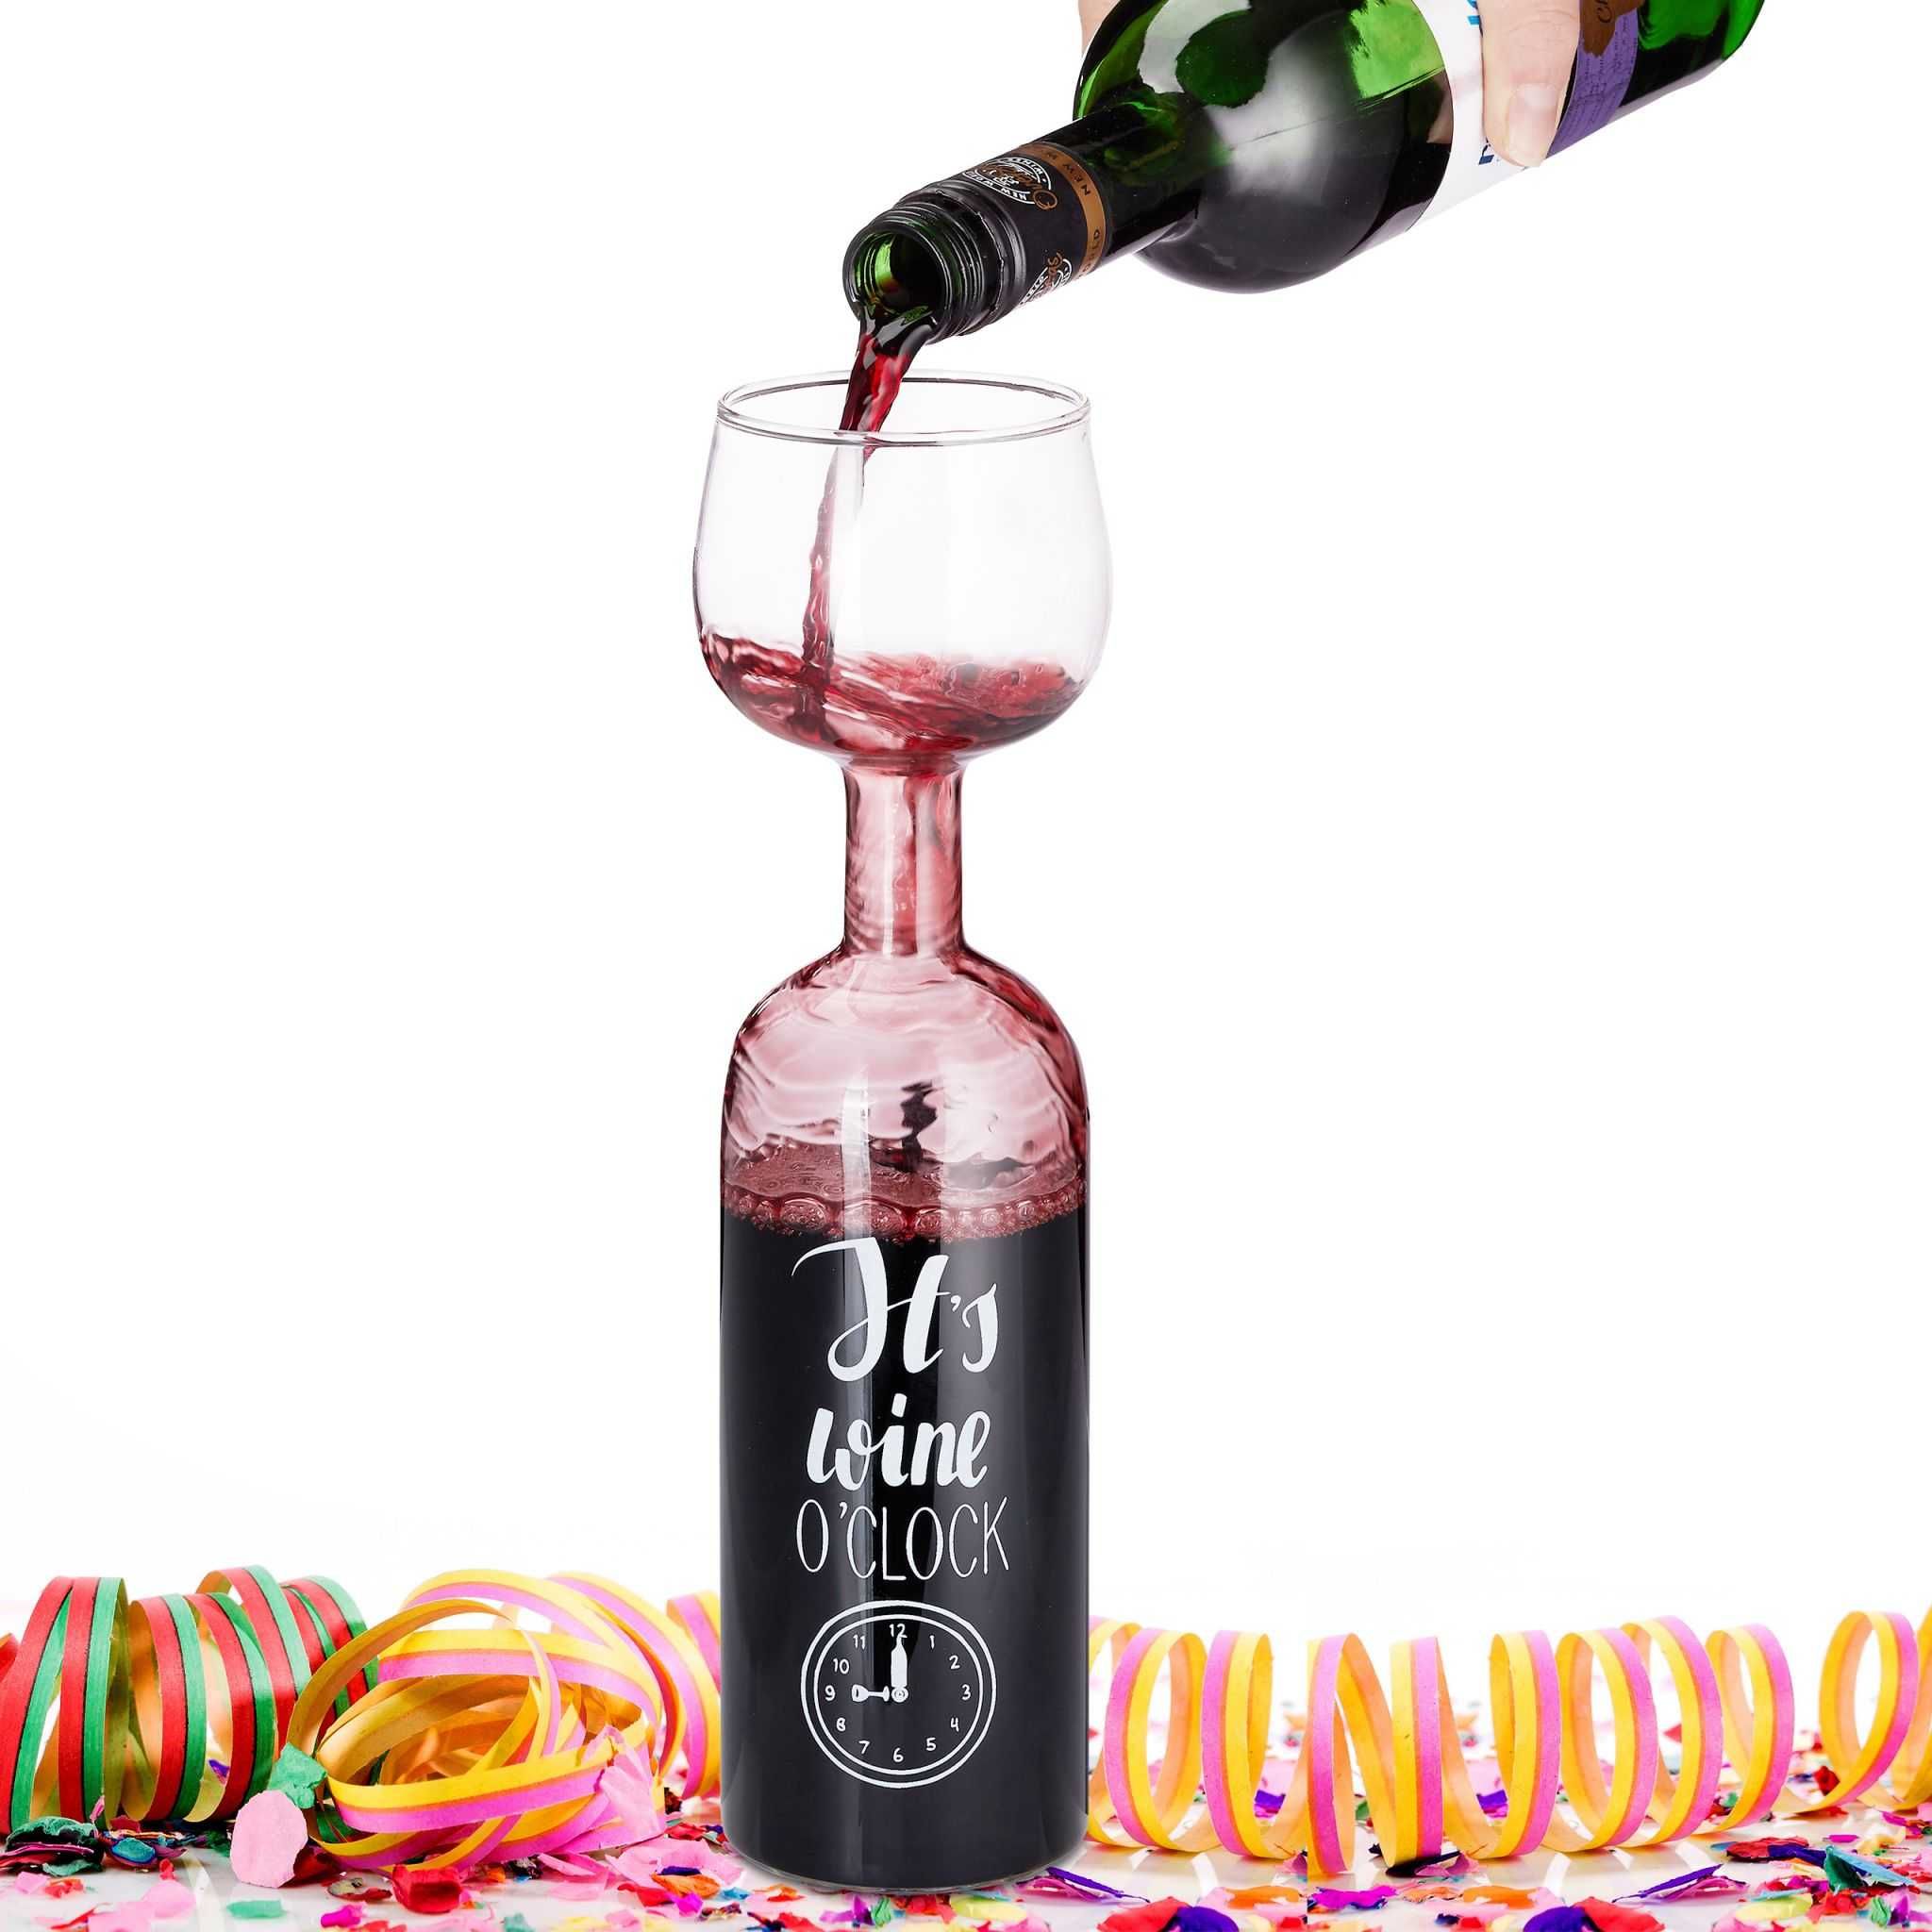 Pahar de vin XL inscriptie "It's wine o'clock" cadou amuzant 750 ml